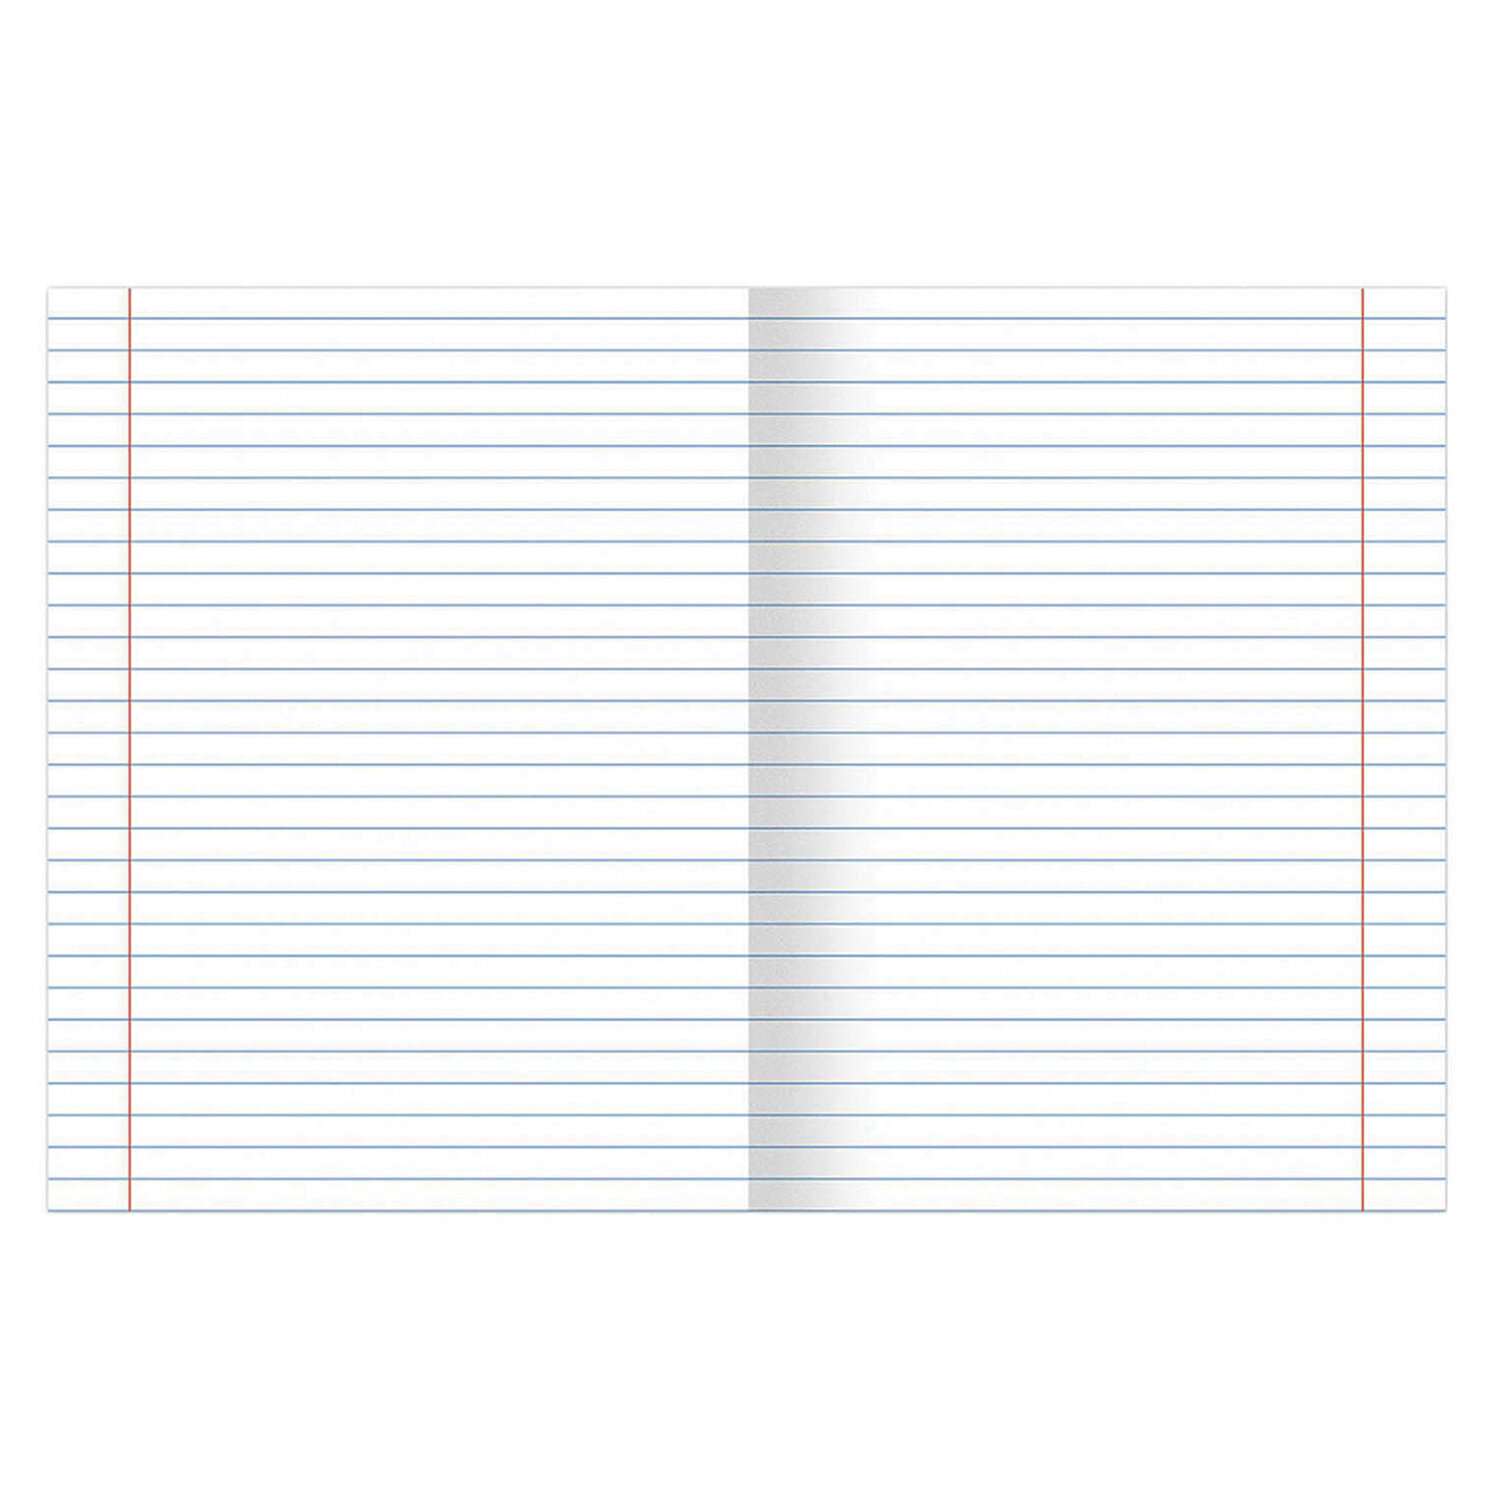 Тетрадь Brauberg для школы тонкая 12 листов набор 10 штук в линию - фото 5